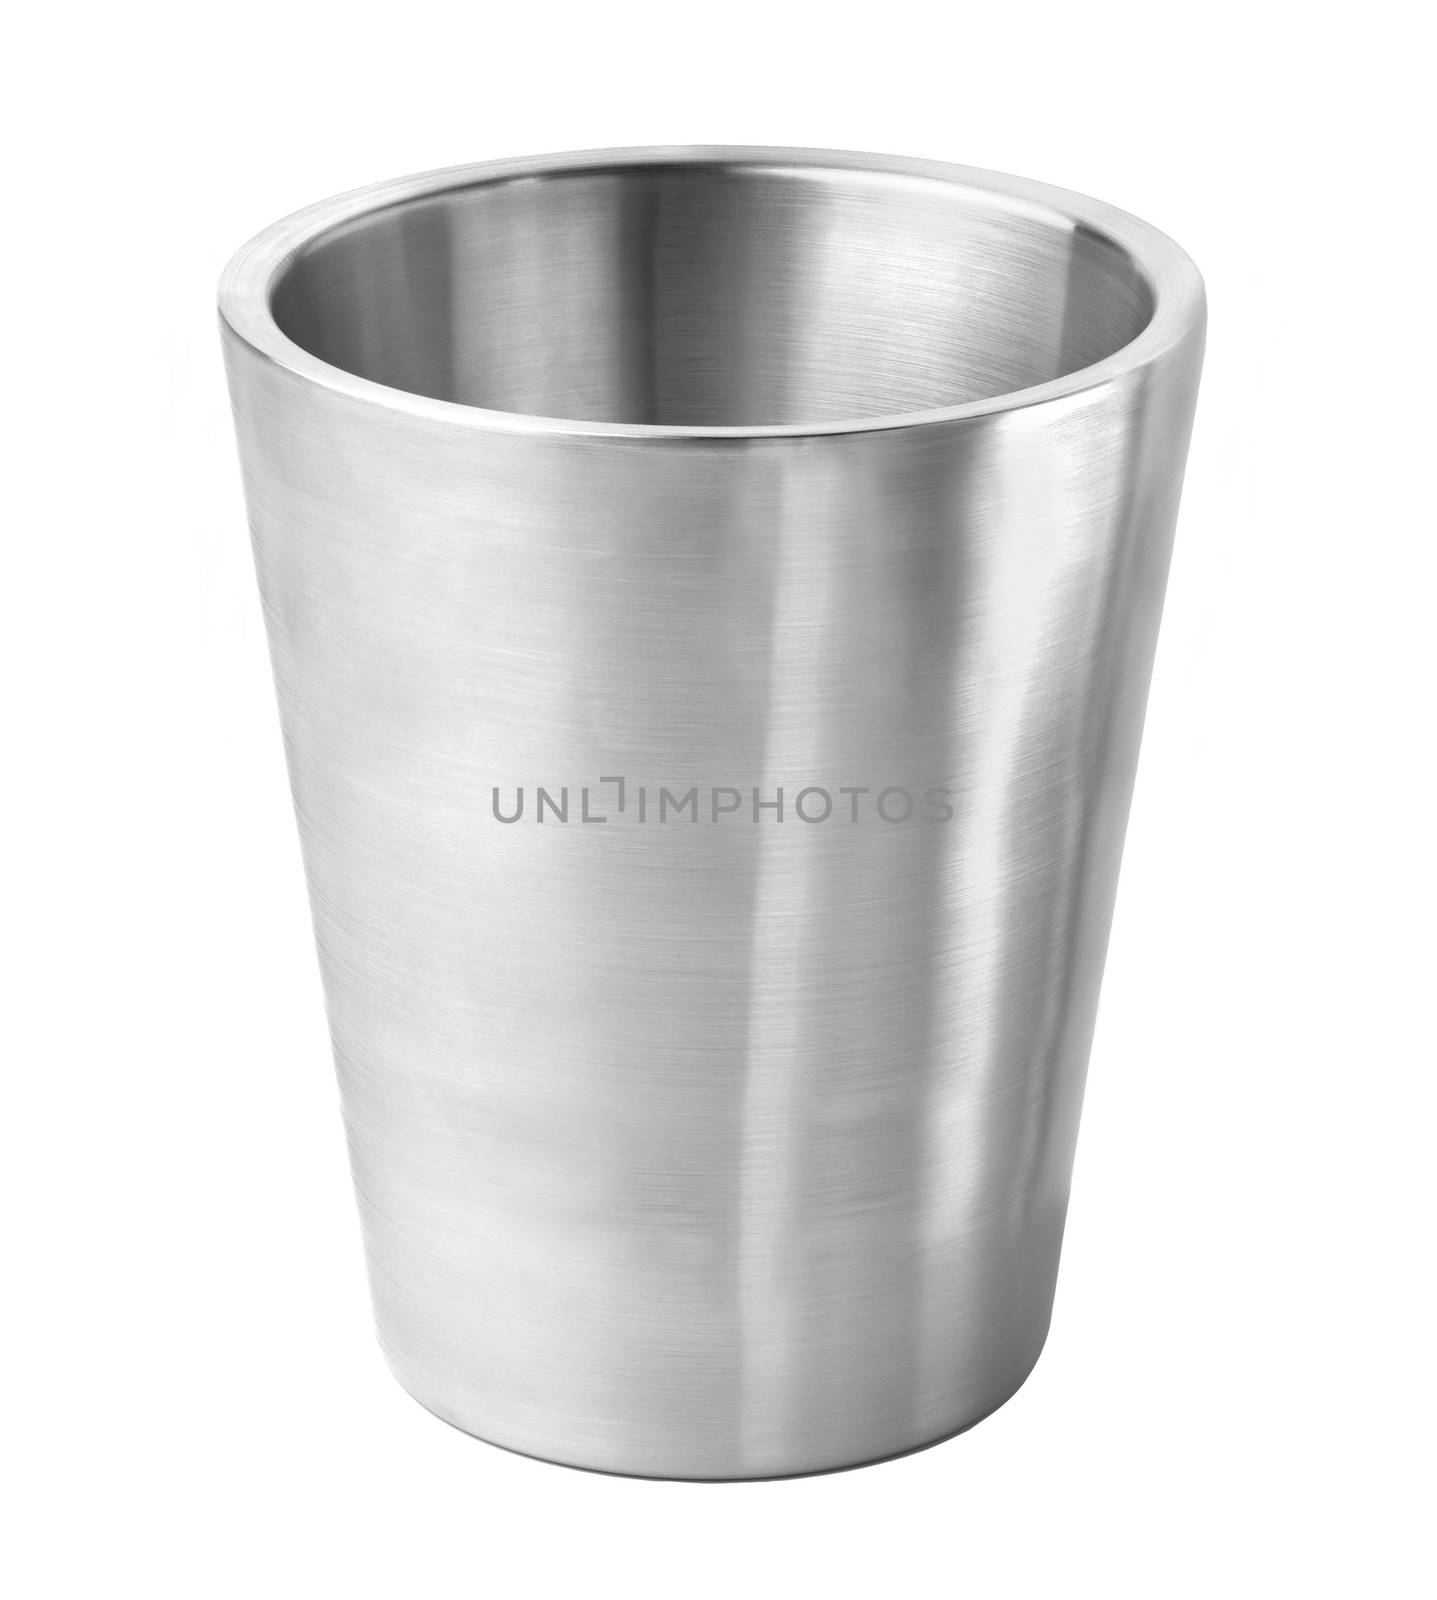 metal bucket isolated on white